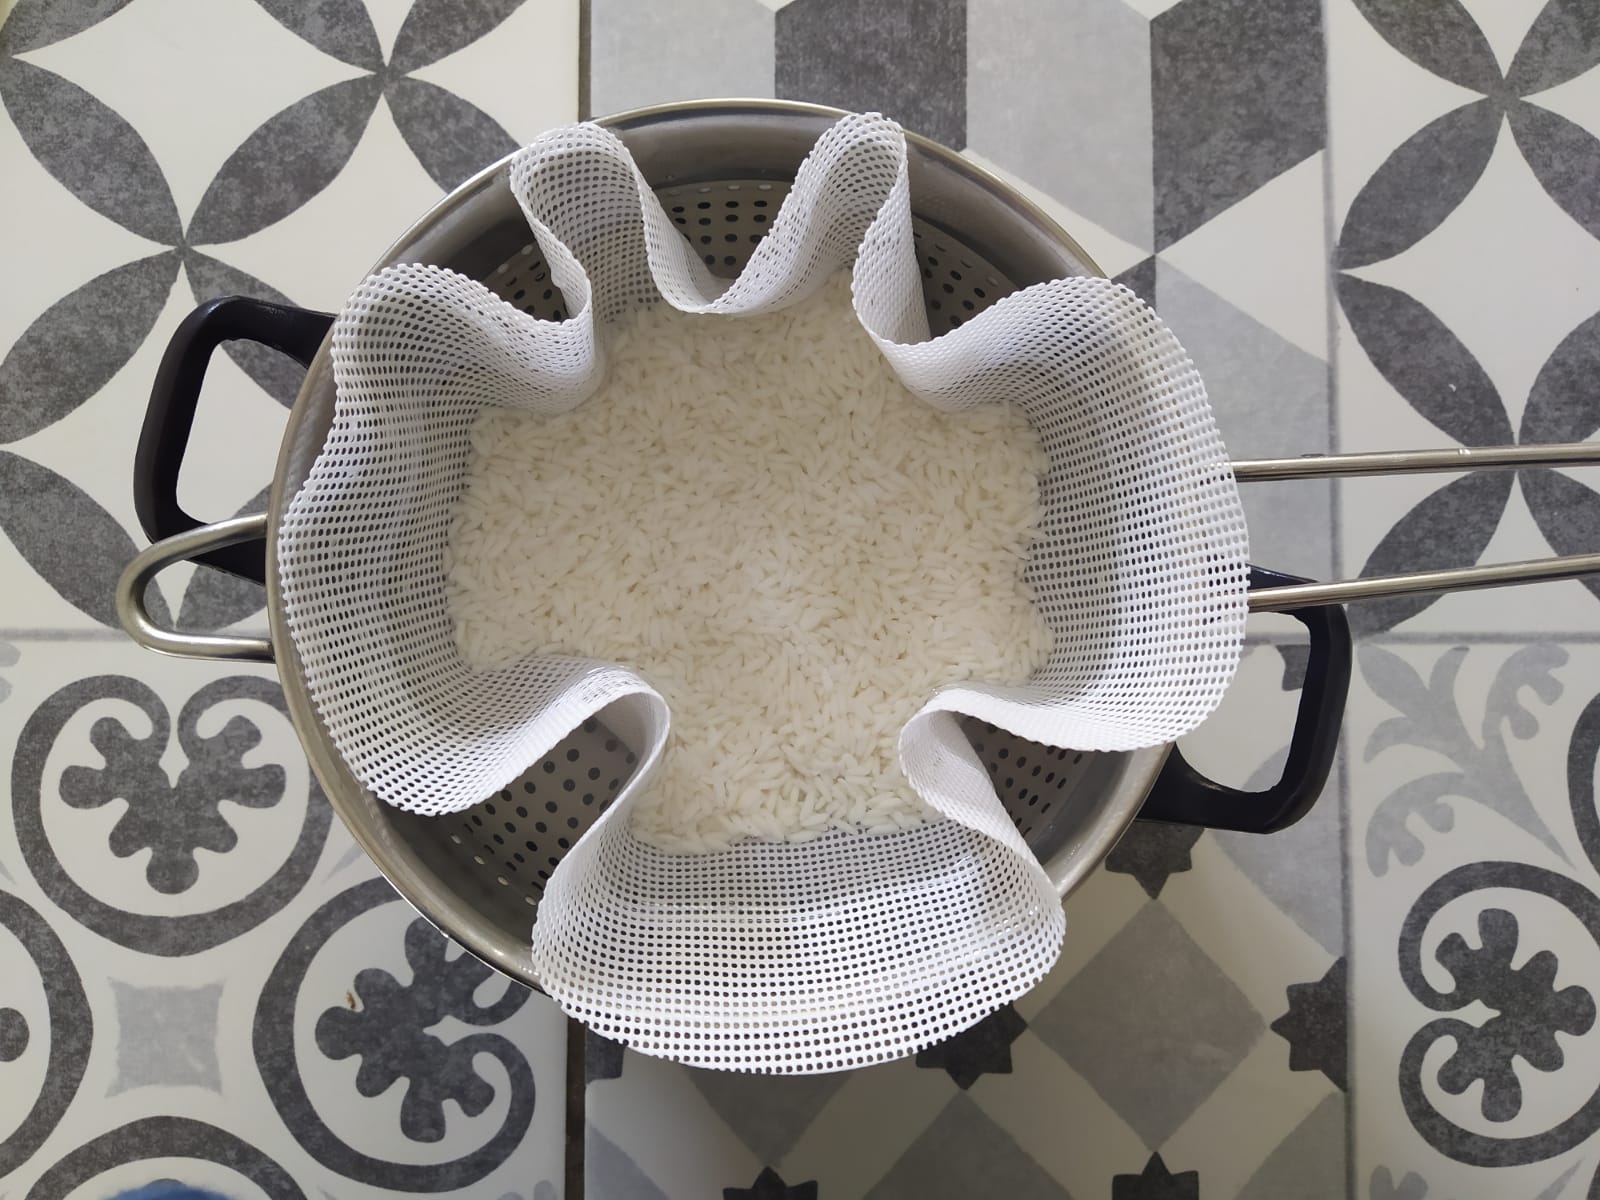  rice wash soak 